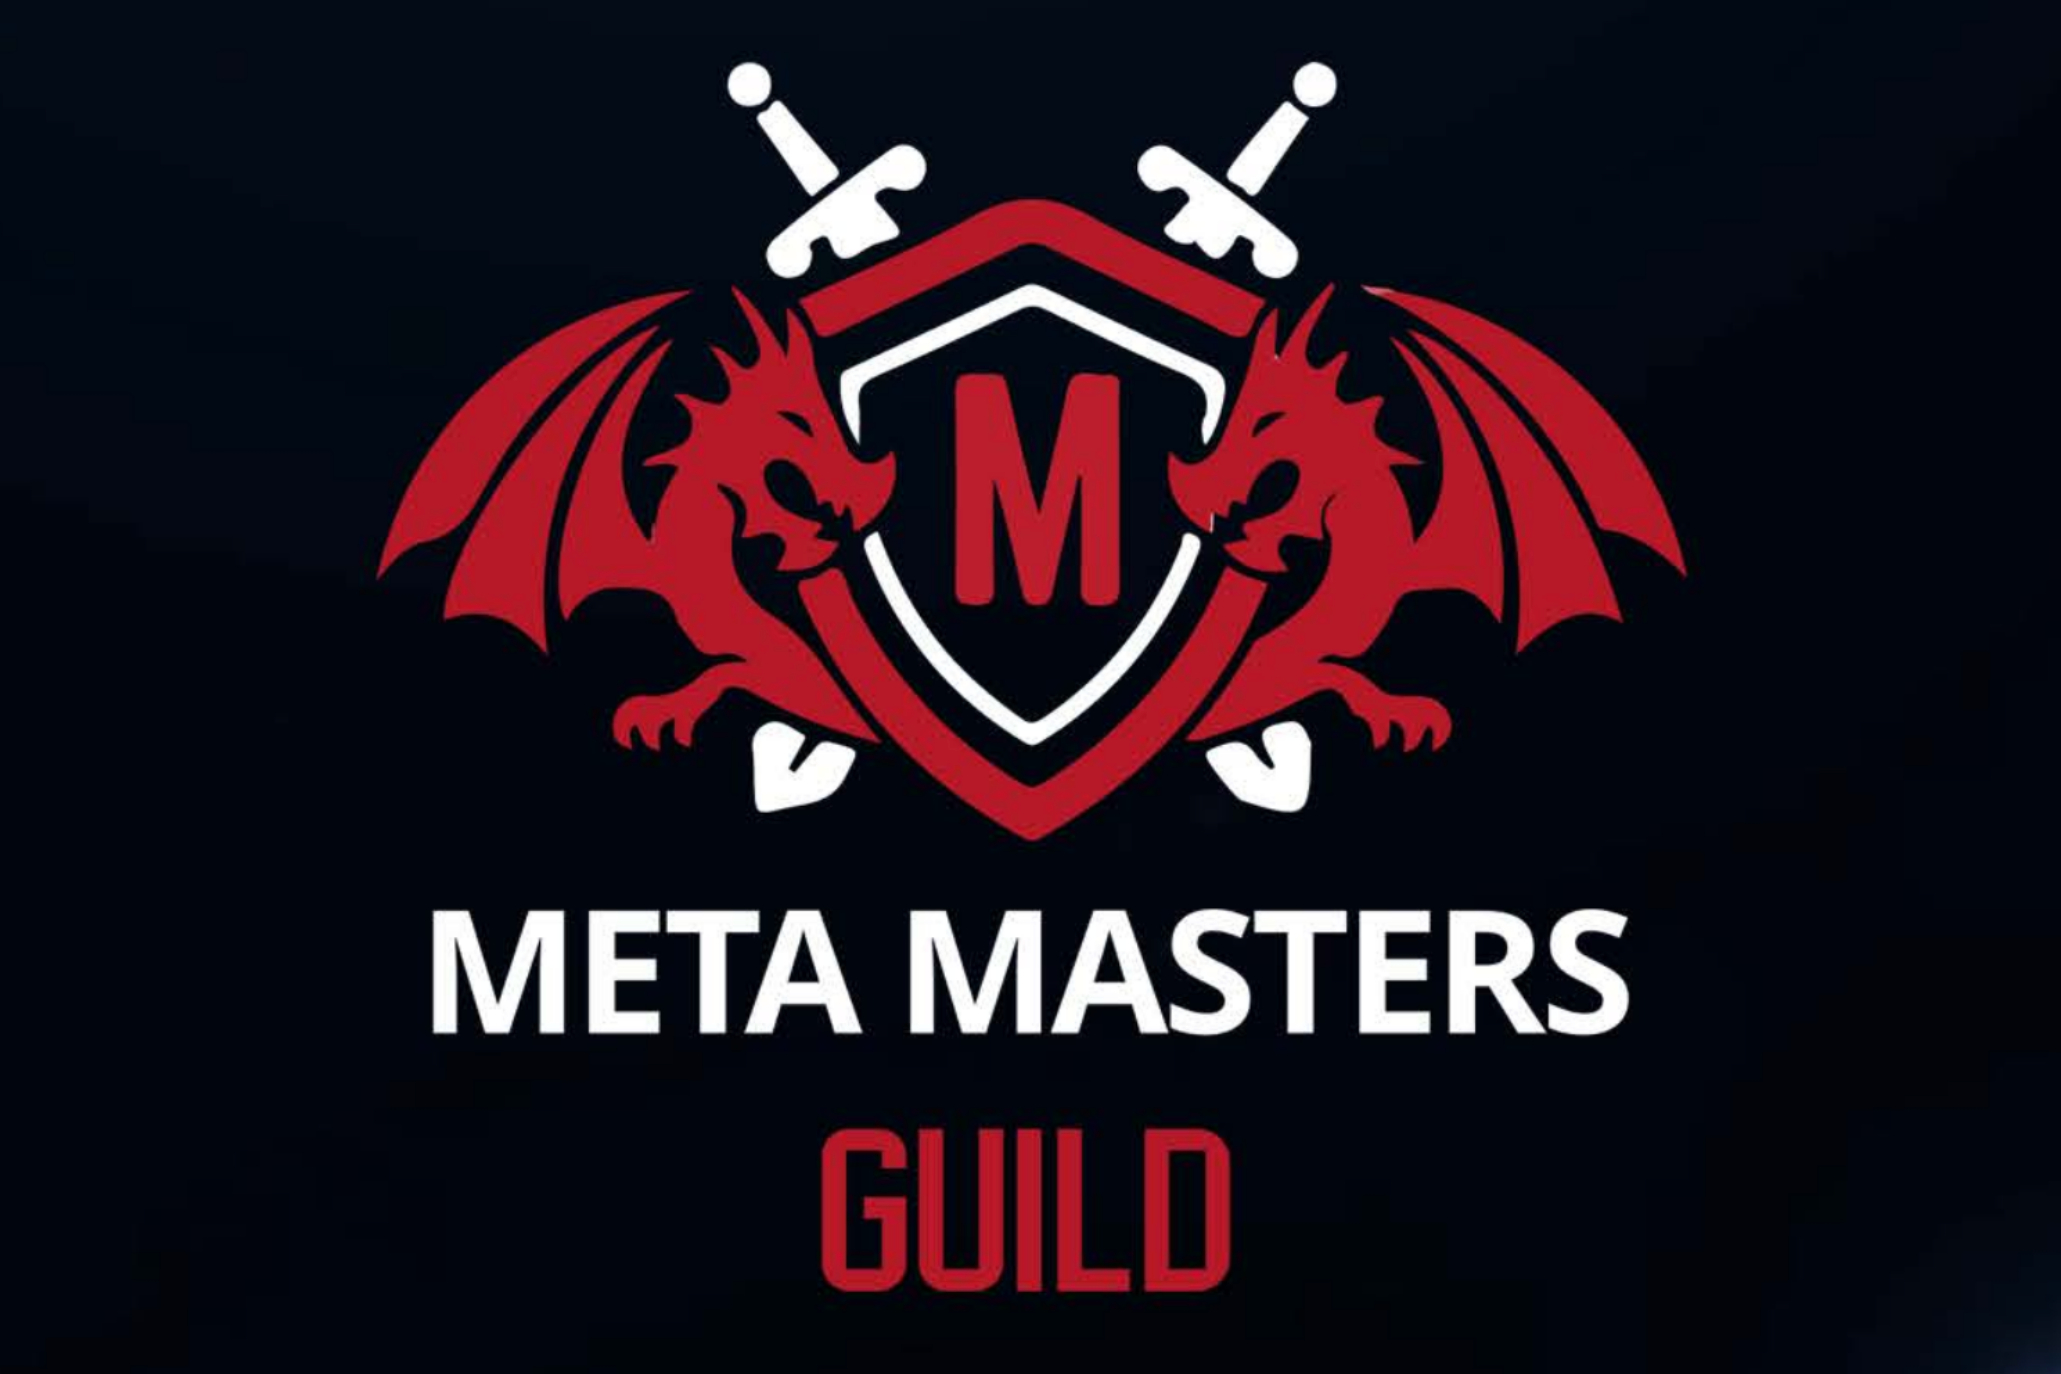 La preventa de Meta Masters Guild recauda 2 millones de dólares: solo cuatro días para un nuevo aumento de precio